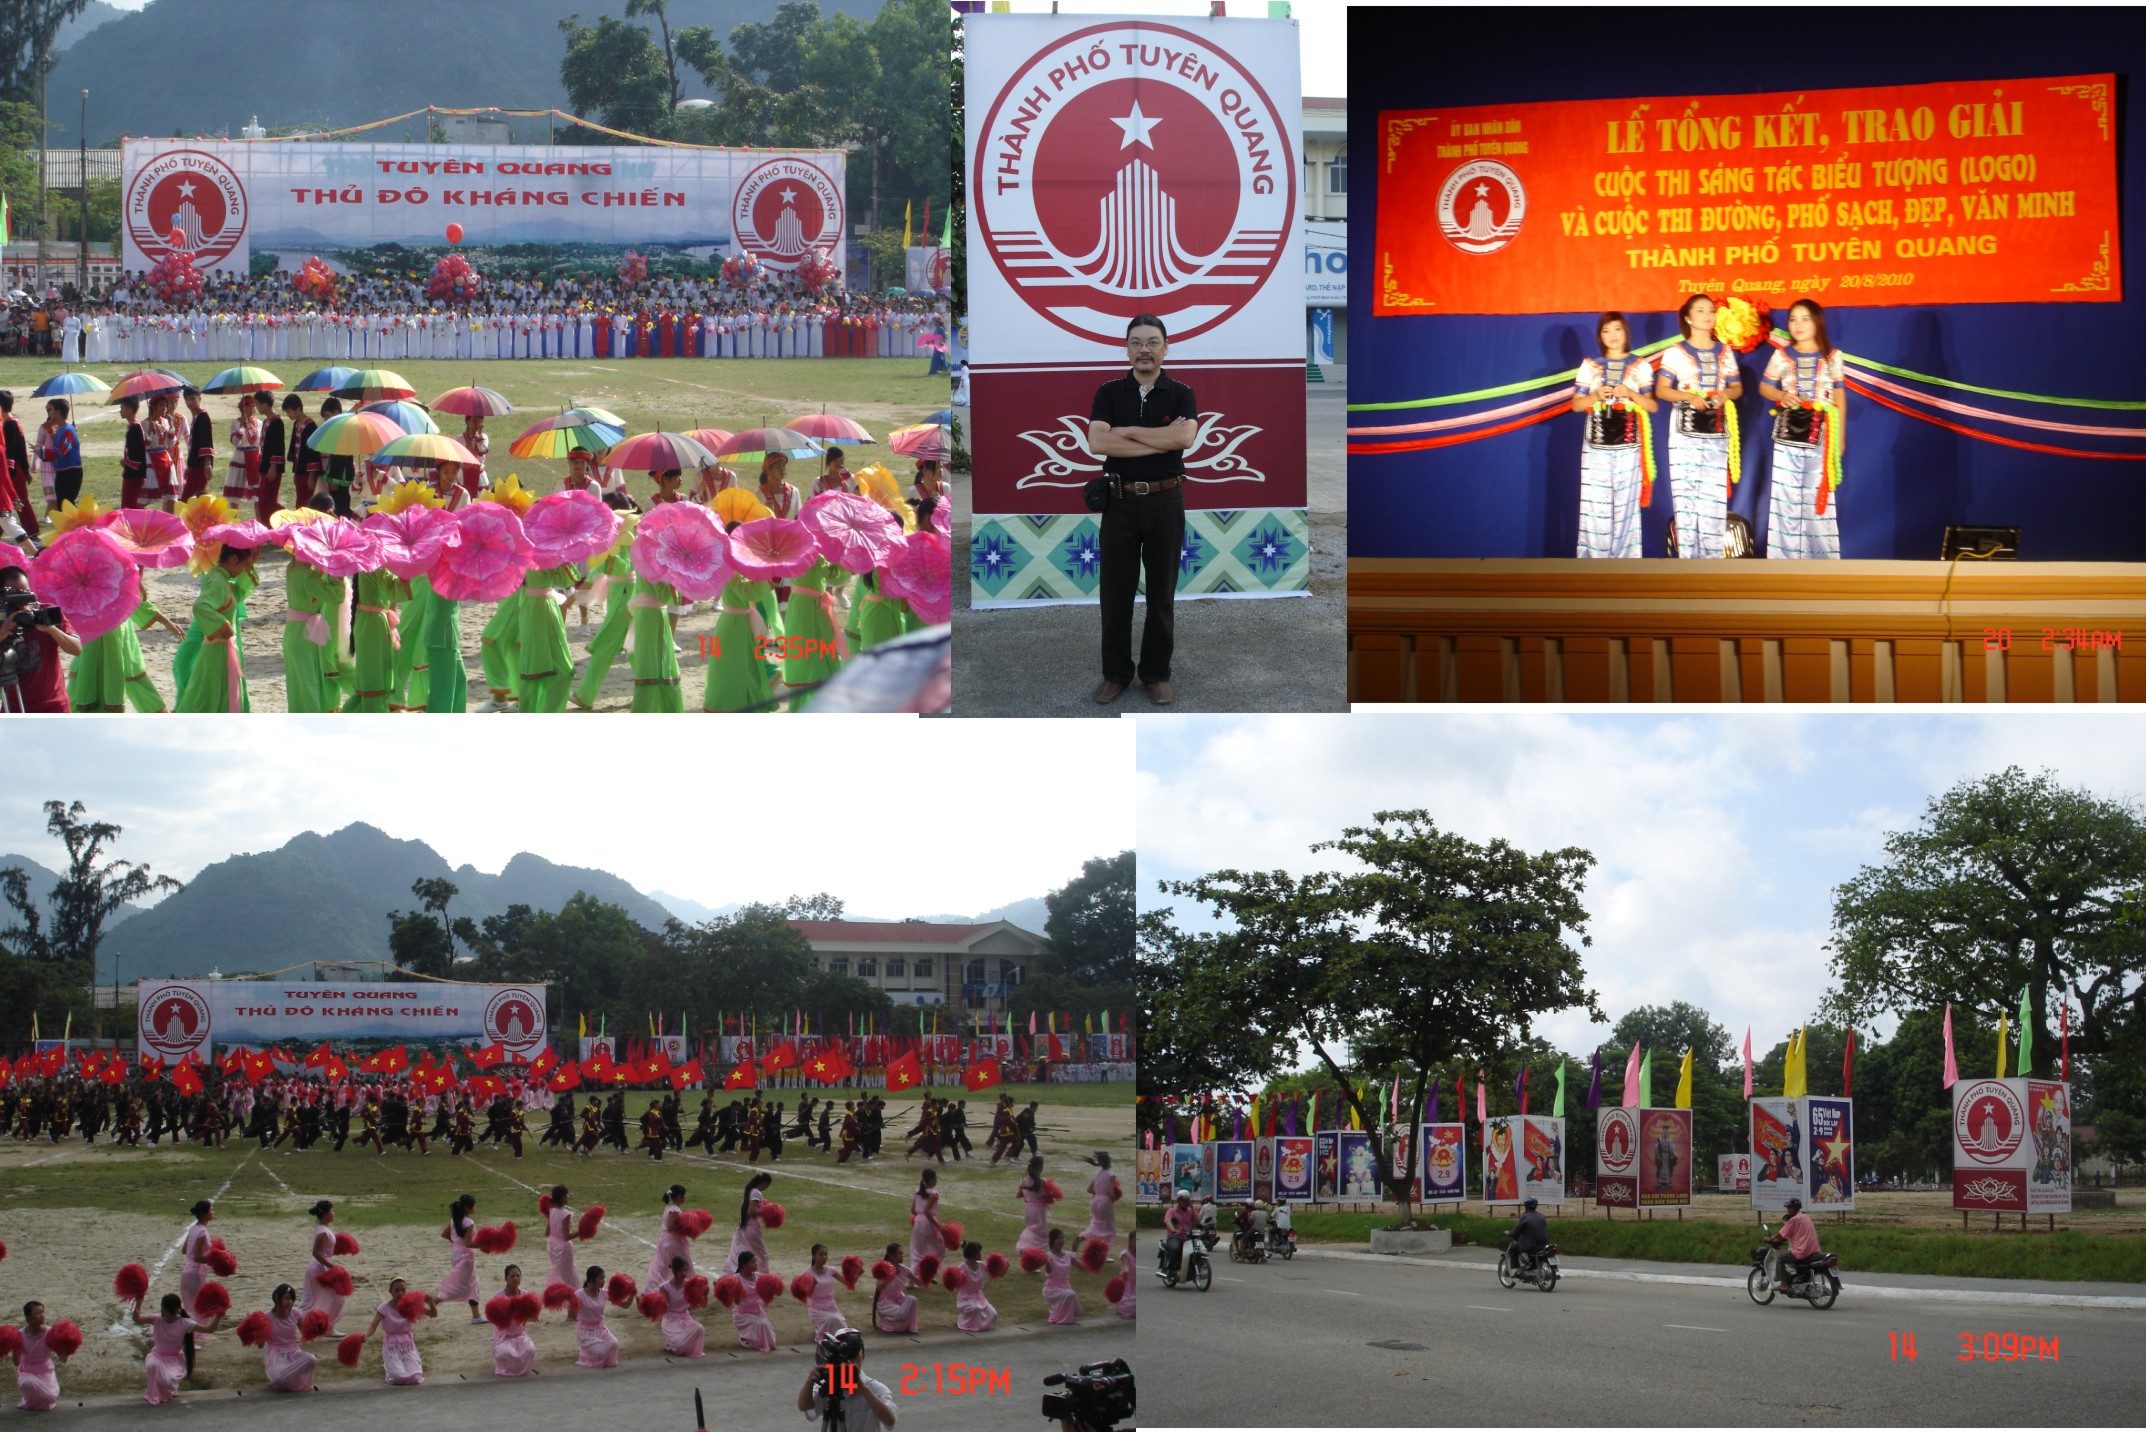 Ngày lễ thành lập Thành phố Tuyên Quang 2010